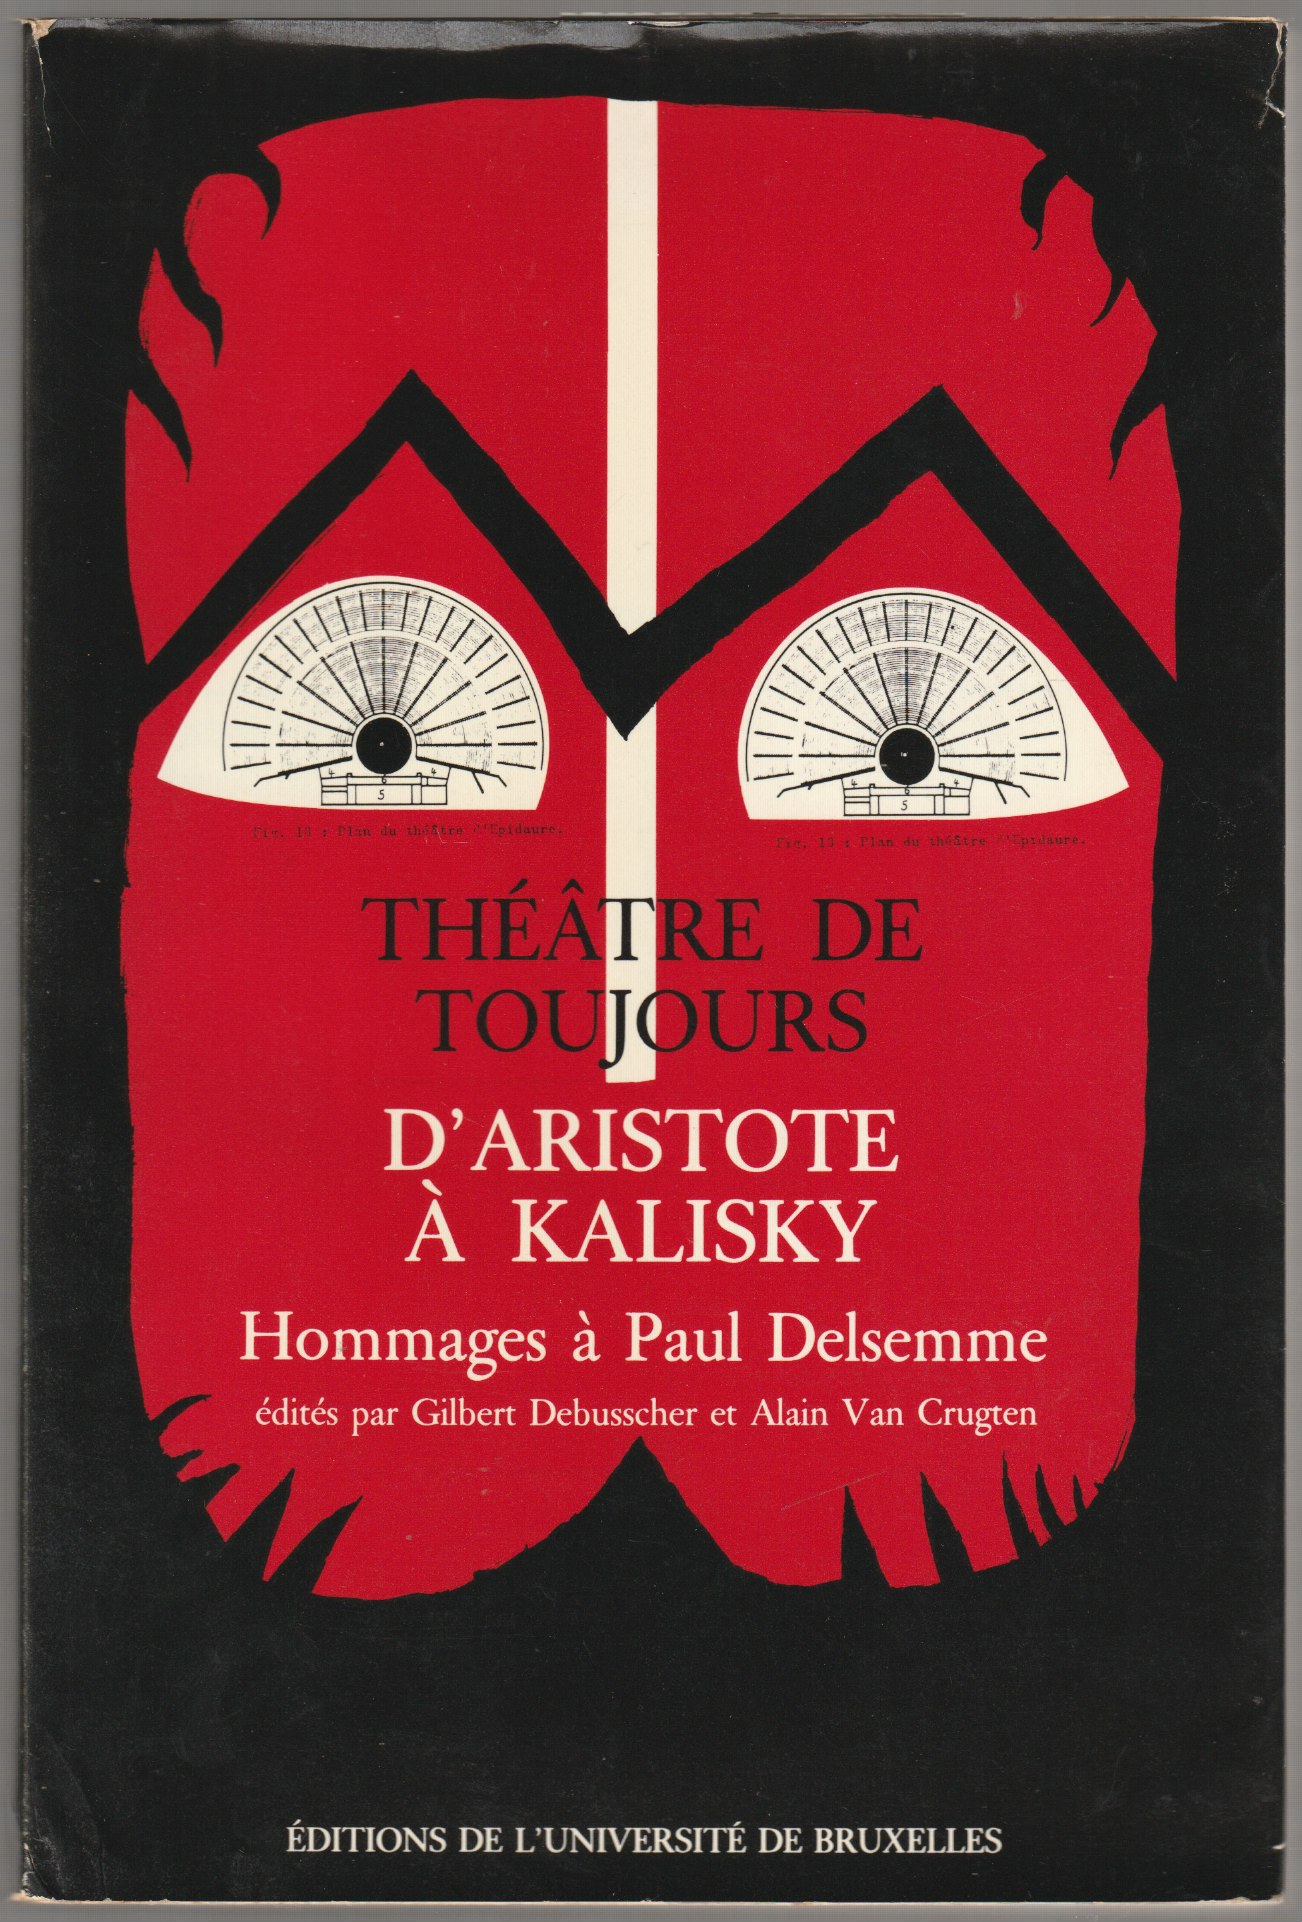 Theatre de toujours d'Aristote a Kalisky : hommages a Paul Delsemme